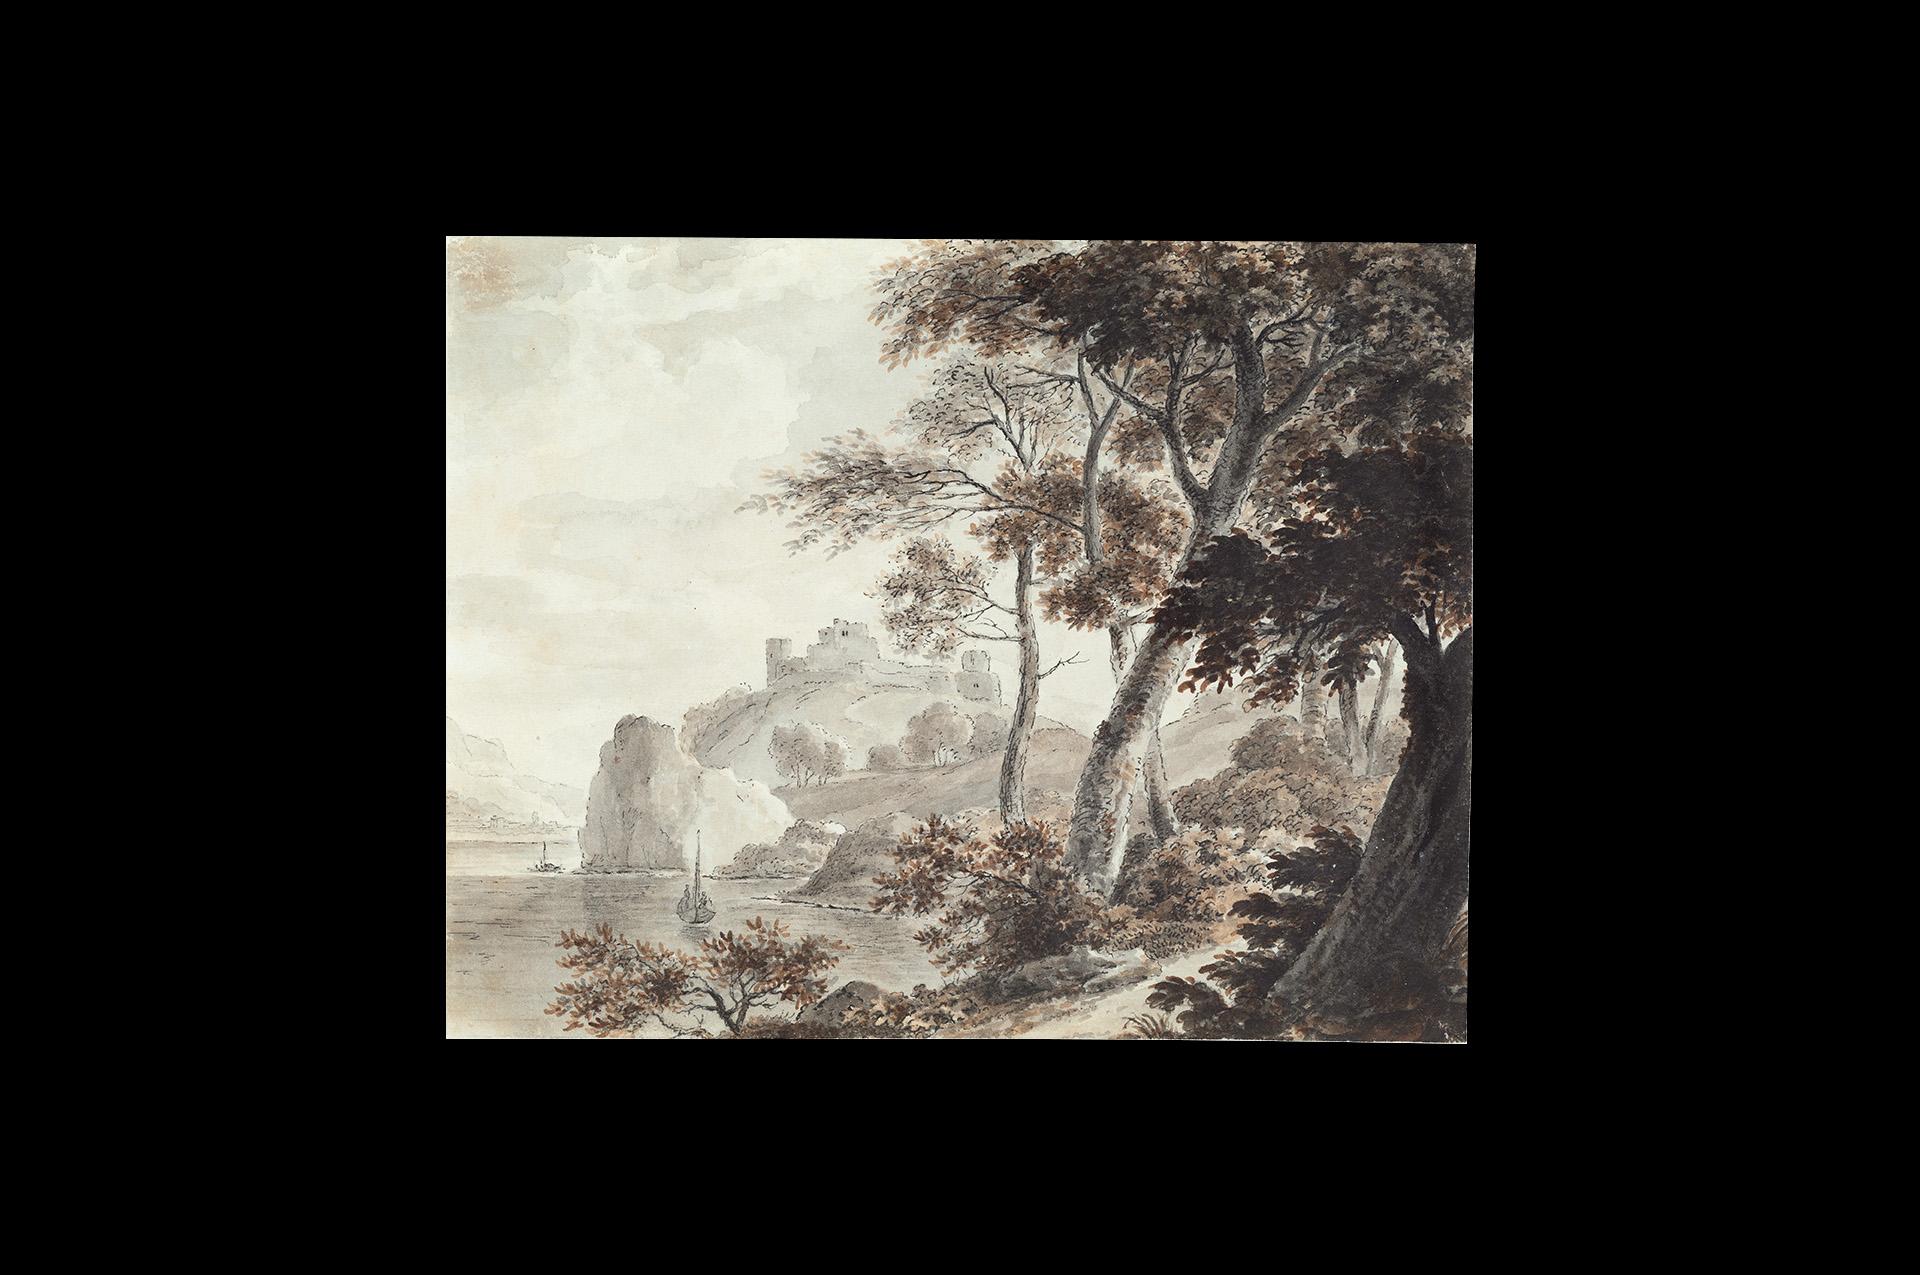 Südstaatliche Landschaft, Schiffe, Zeichnung eines alten Meisters, 19. Jahrhundert, von Von Stengel – Art von Stephan Christian von Stengel